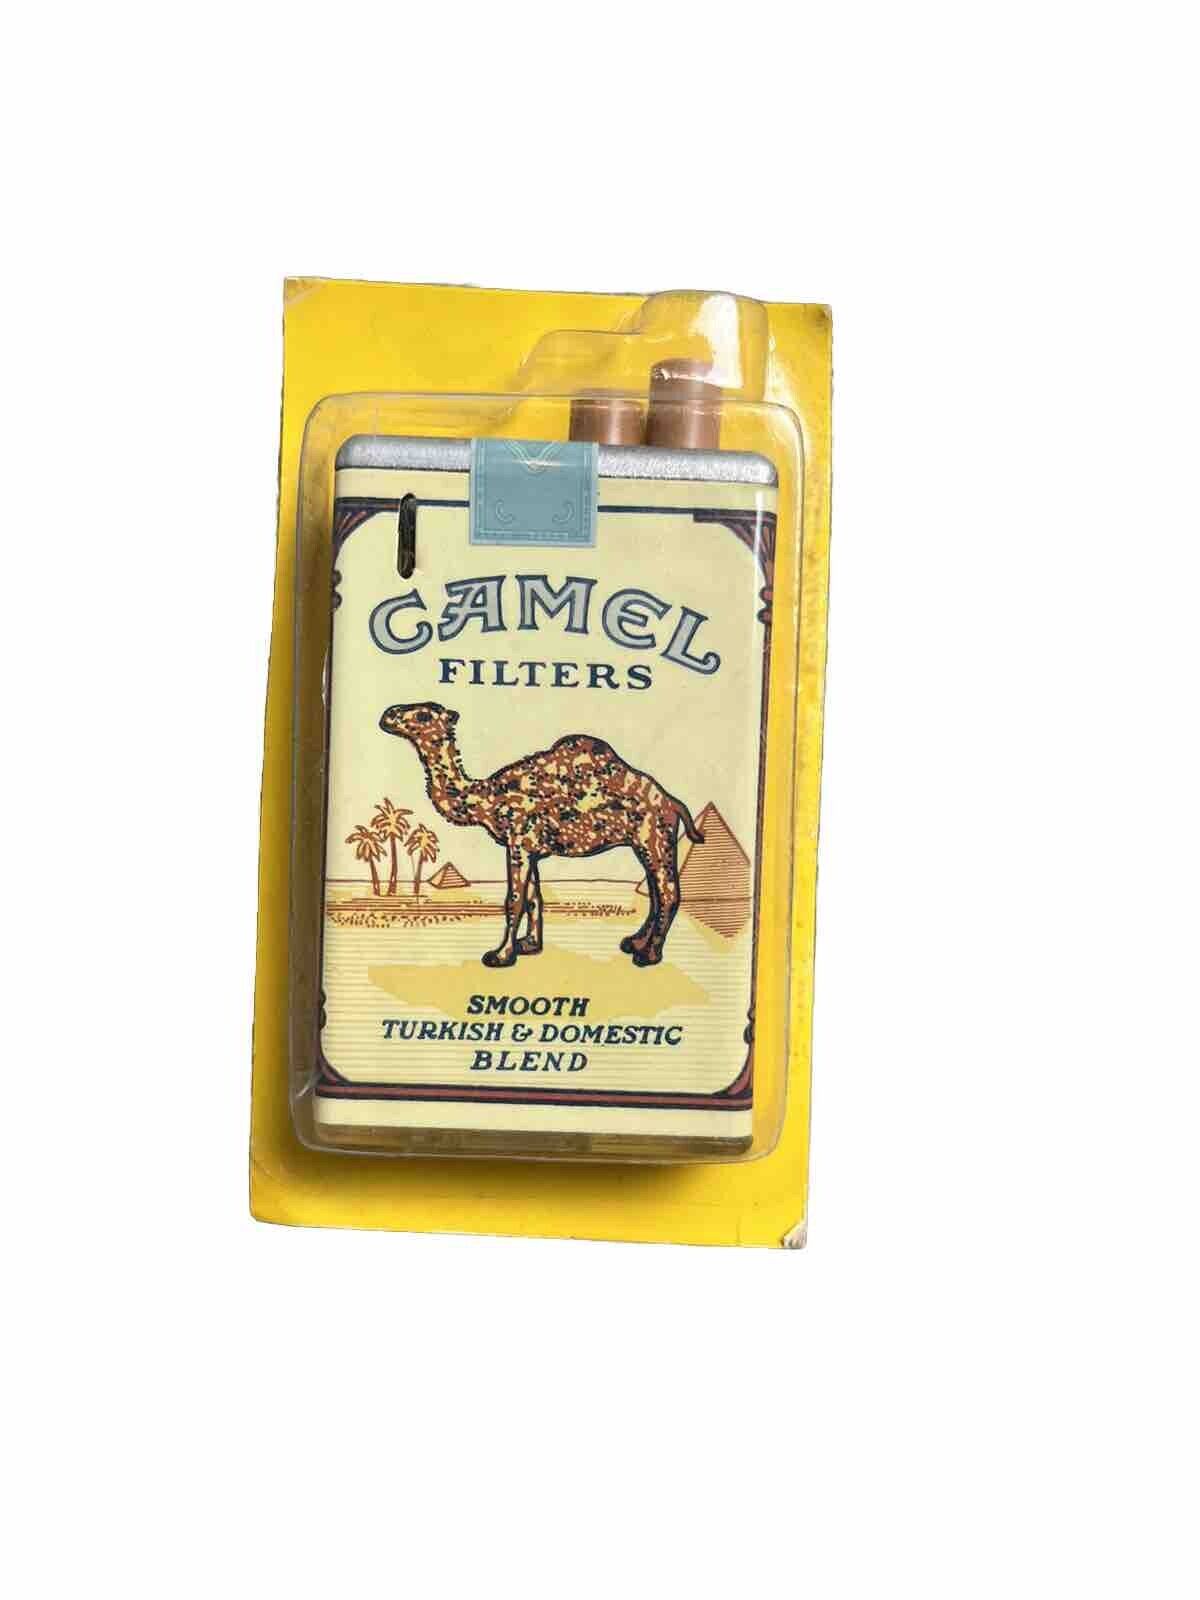 Vintage Camel Lighter Cigarette Pack Joe Camel Promo 